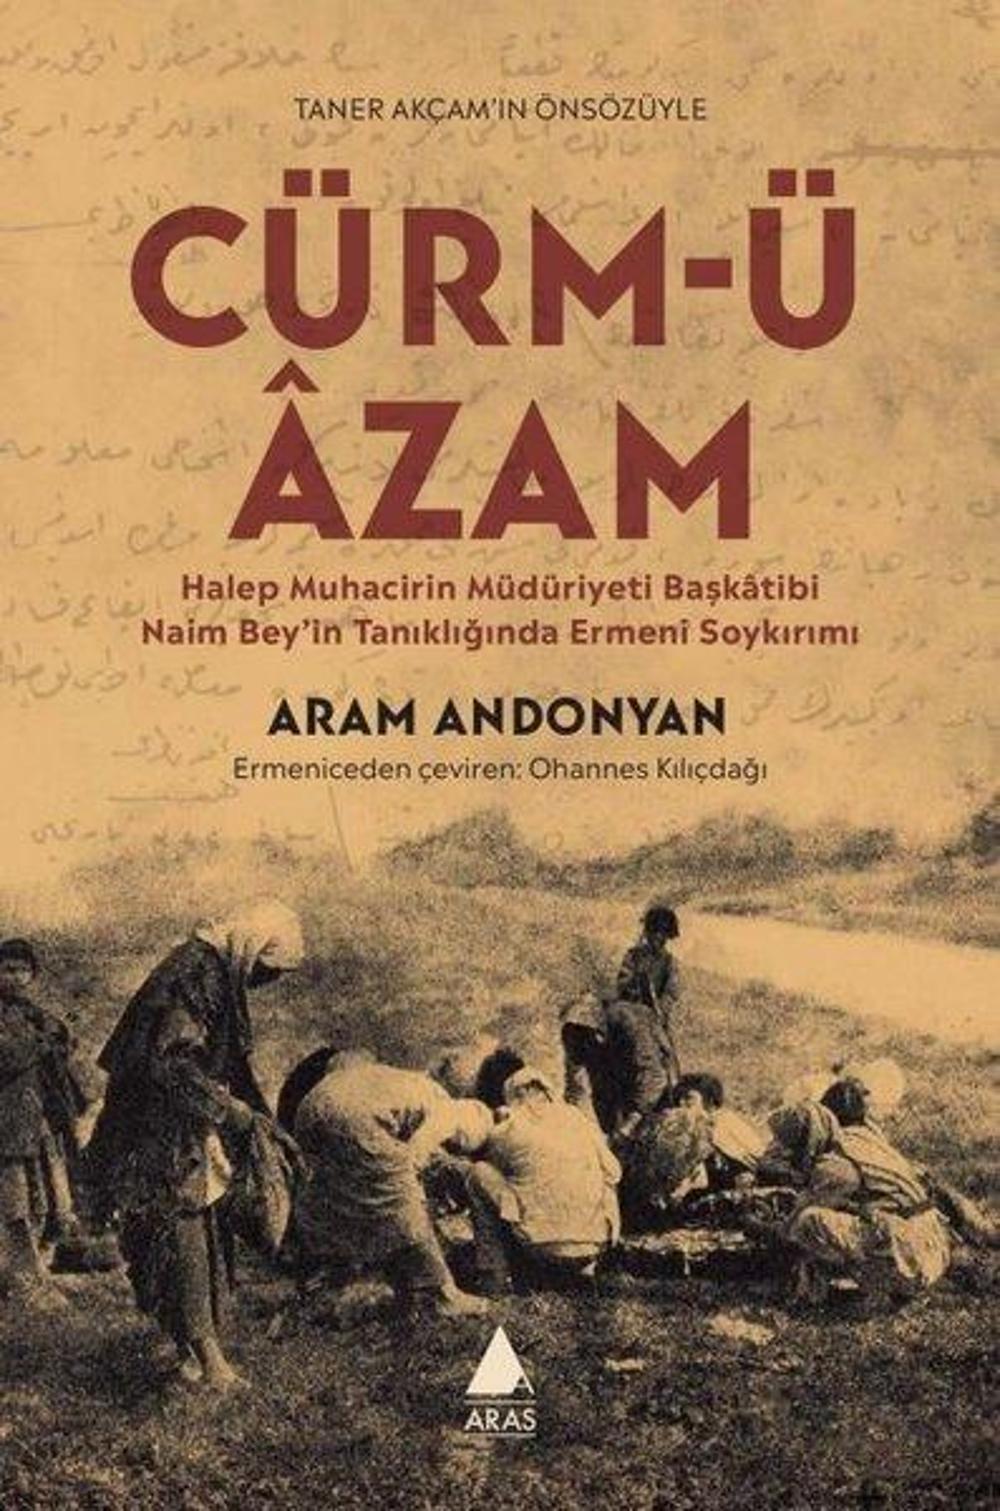 Cürm'ü Azam - Halep Muhacirin Müdüriyeti Başkatibi Naim Bey'in Tanıklığında Ermeni Soykırımı | Aras Yayıncılık